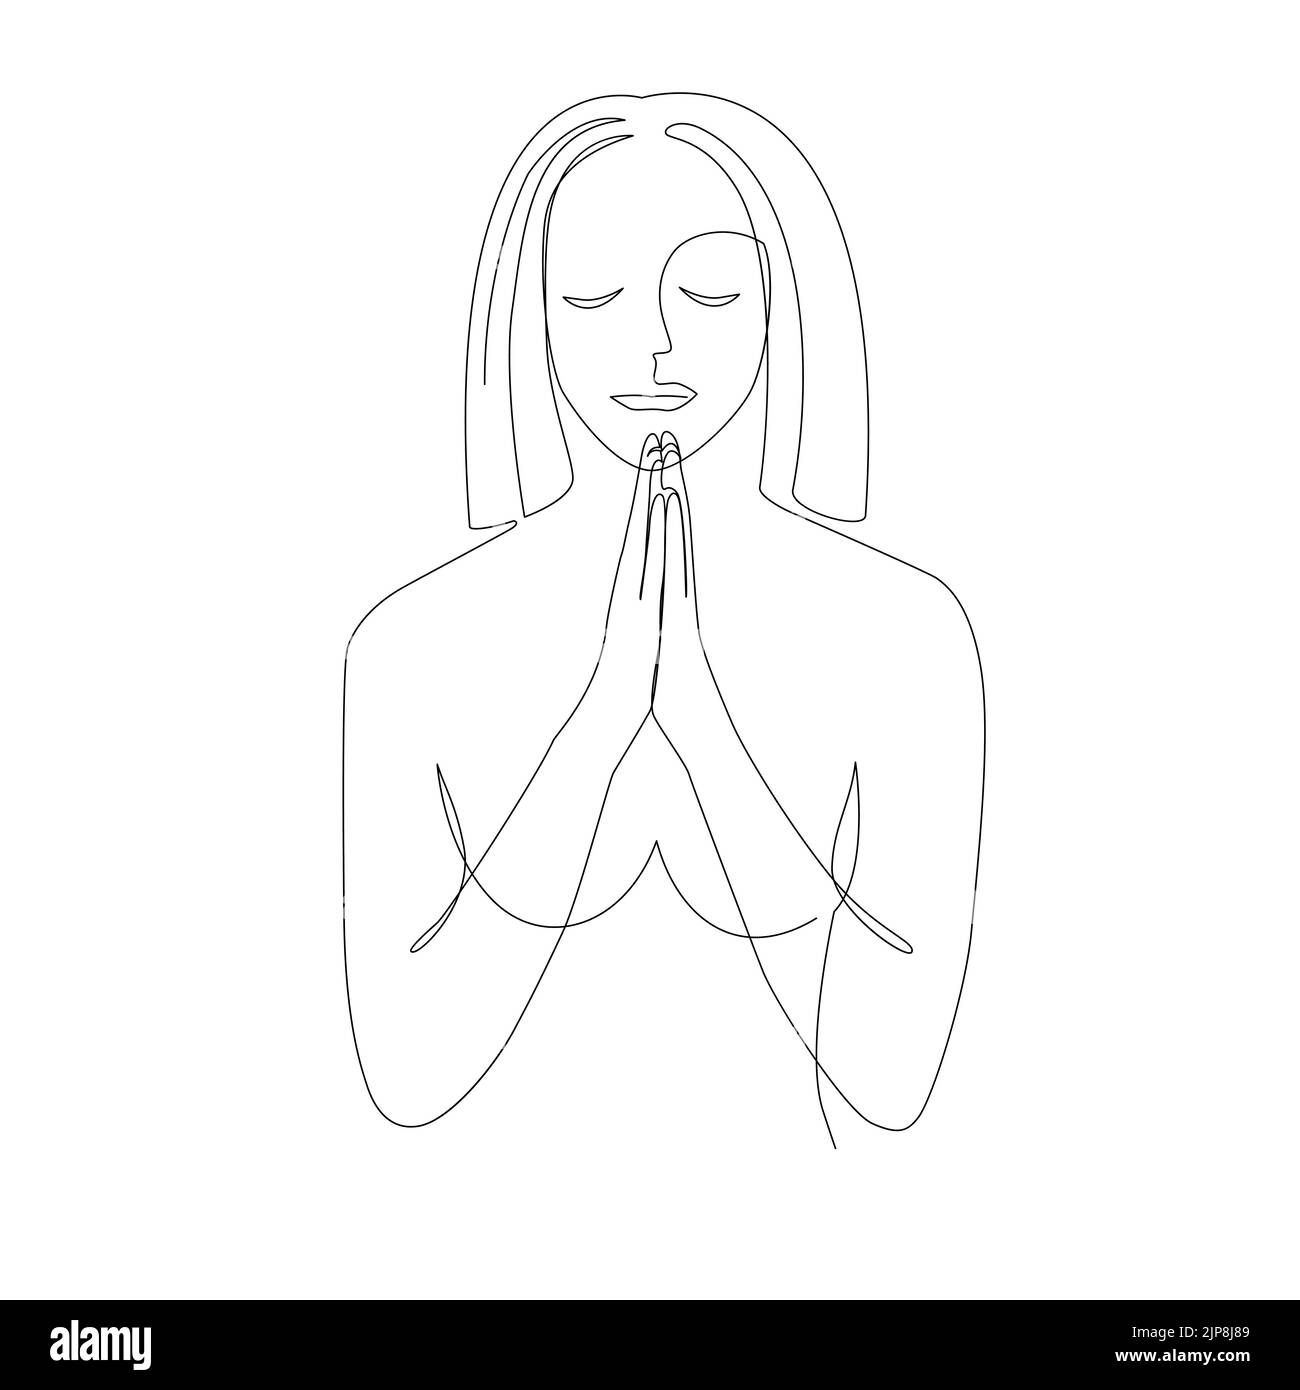 Praiyng donna. Disegno a linea continua della preghiera con cuore spezzato, illustrazione vettoriale Illustrazione Vettoriale